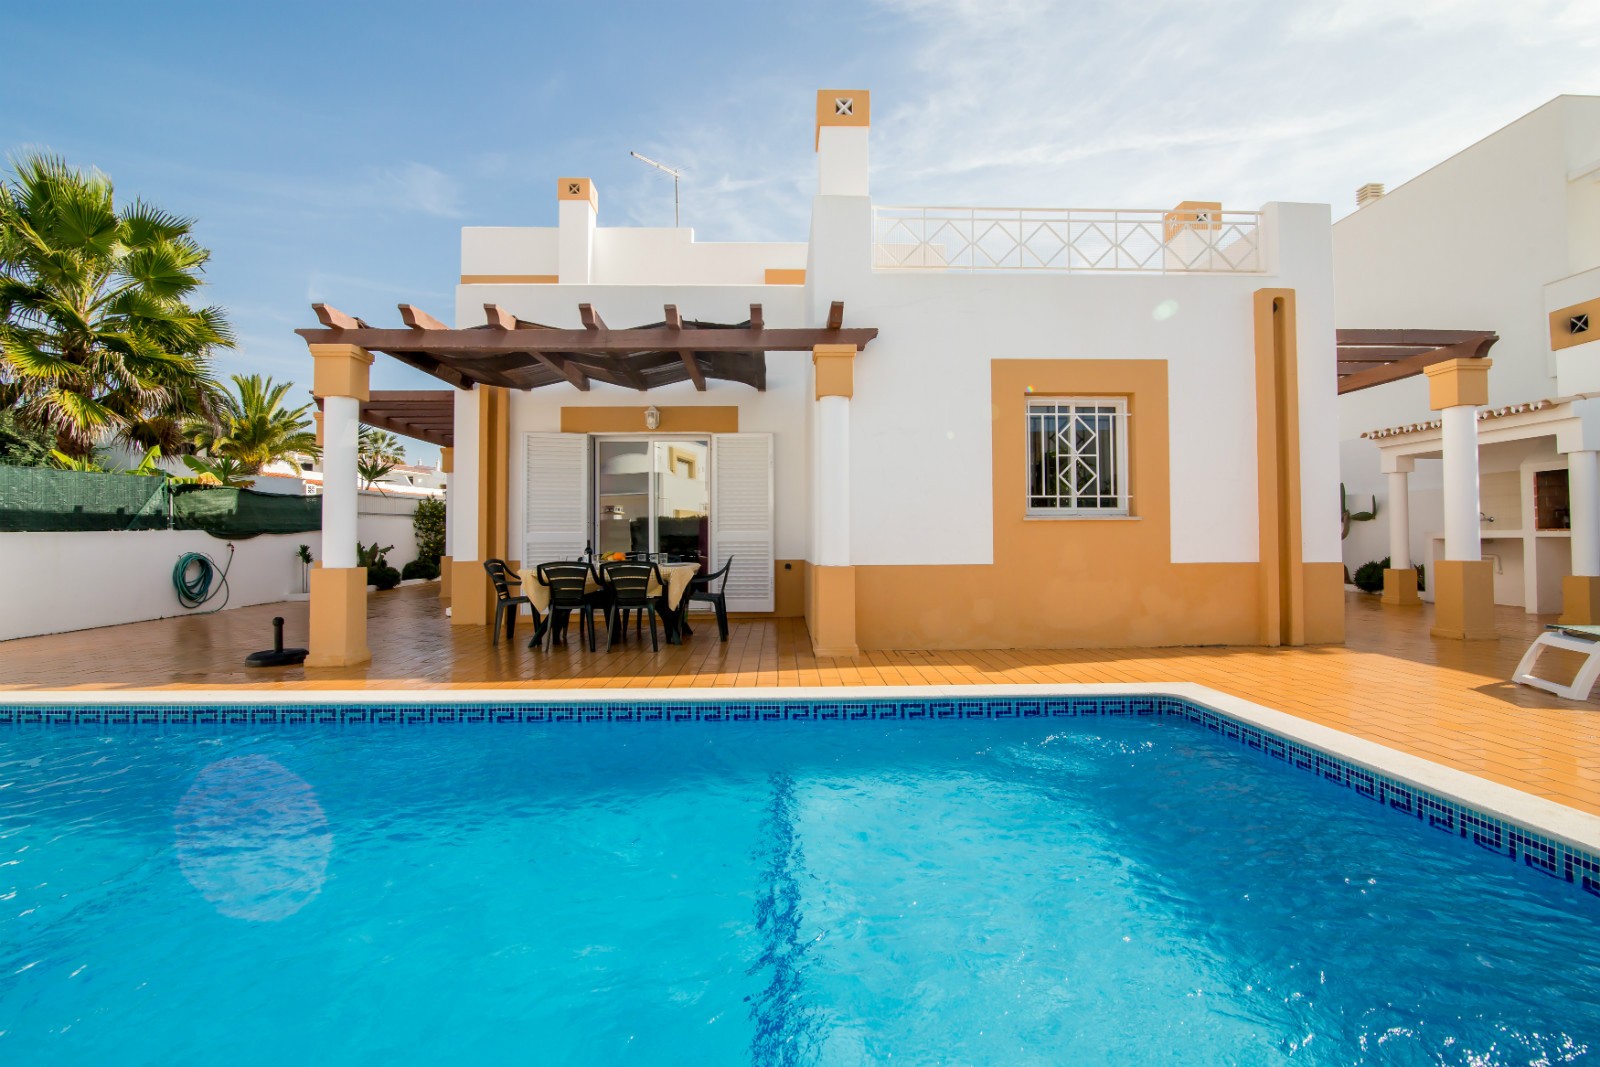 Villa Avo, Gale, Albufeira. 3 Bedrooms, 3 Bathrooms Villa with a Sunny, Private Pool & Near Beaches. Ref No. 1642357.